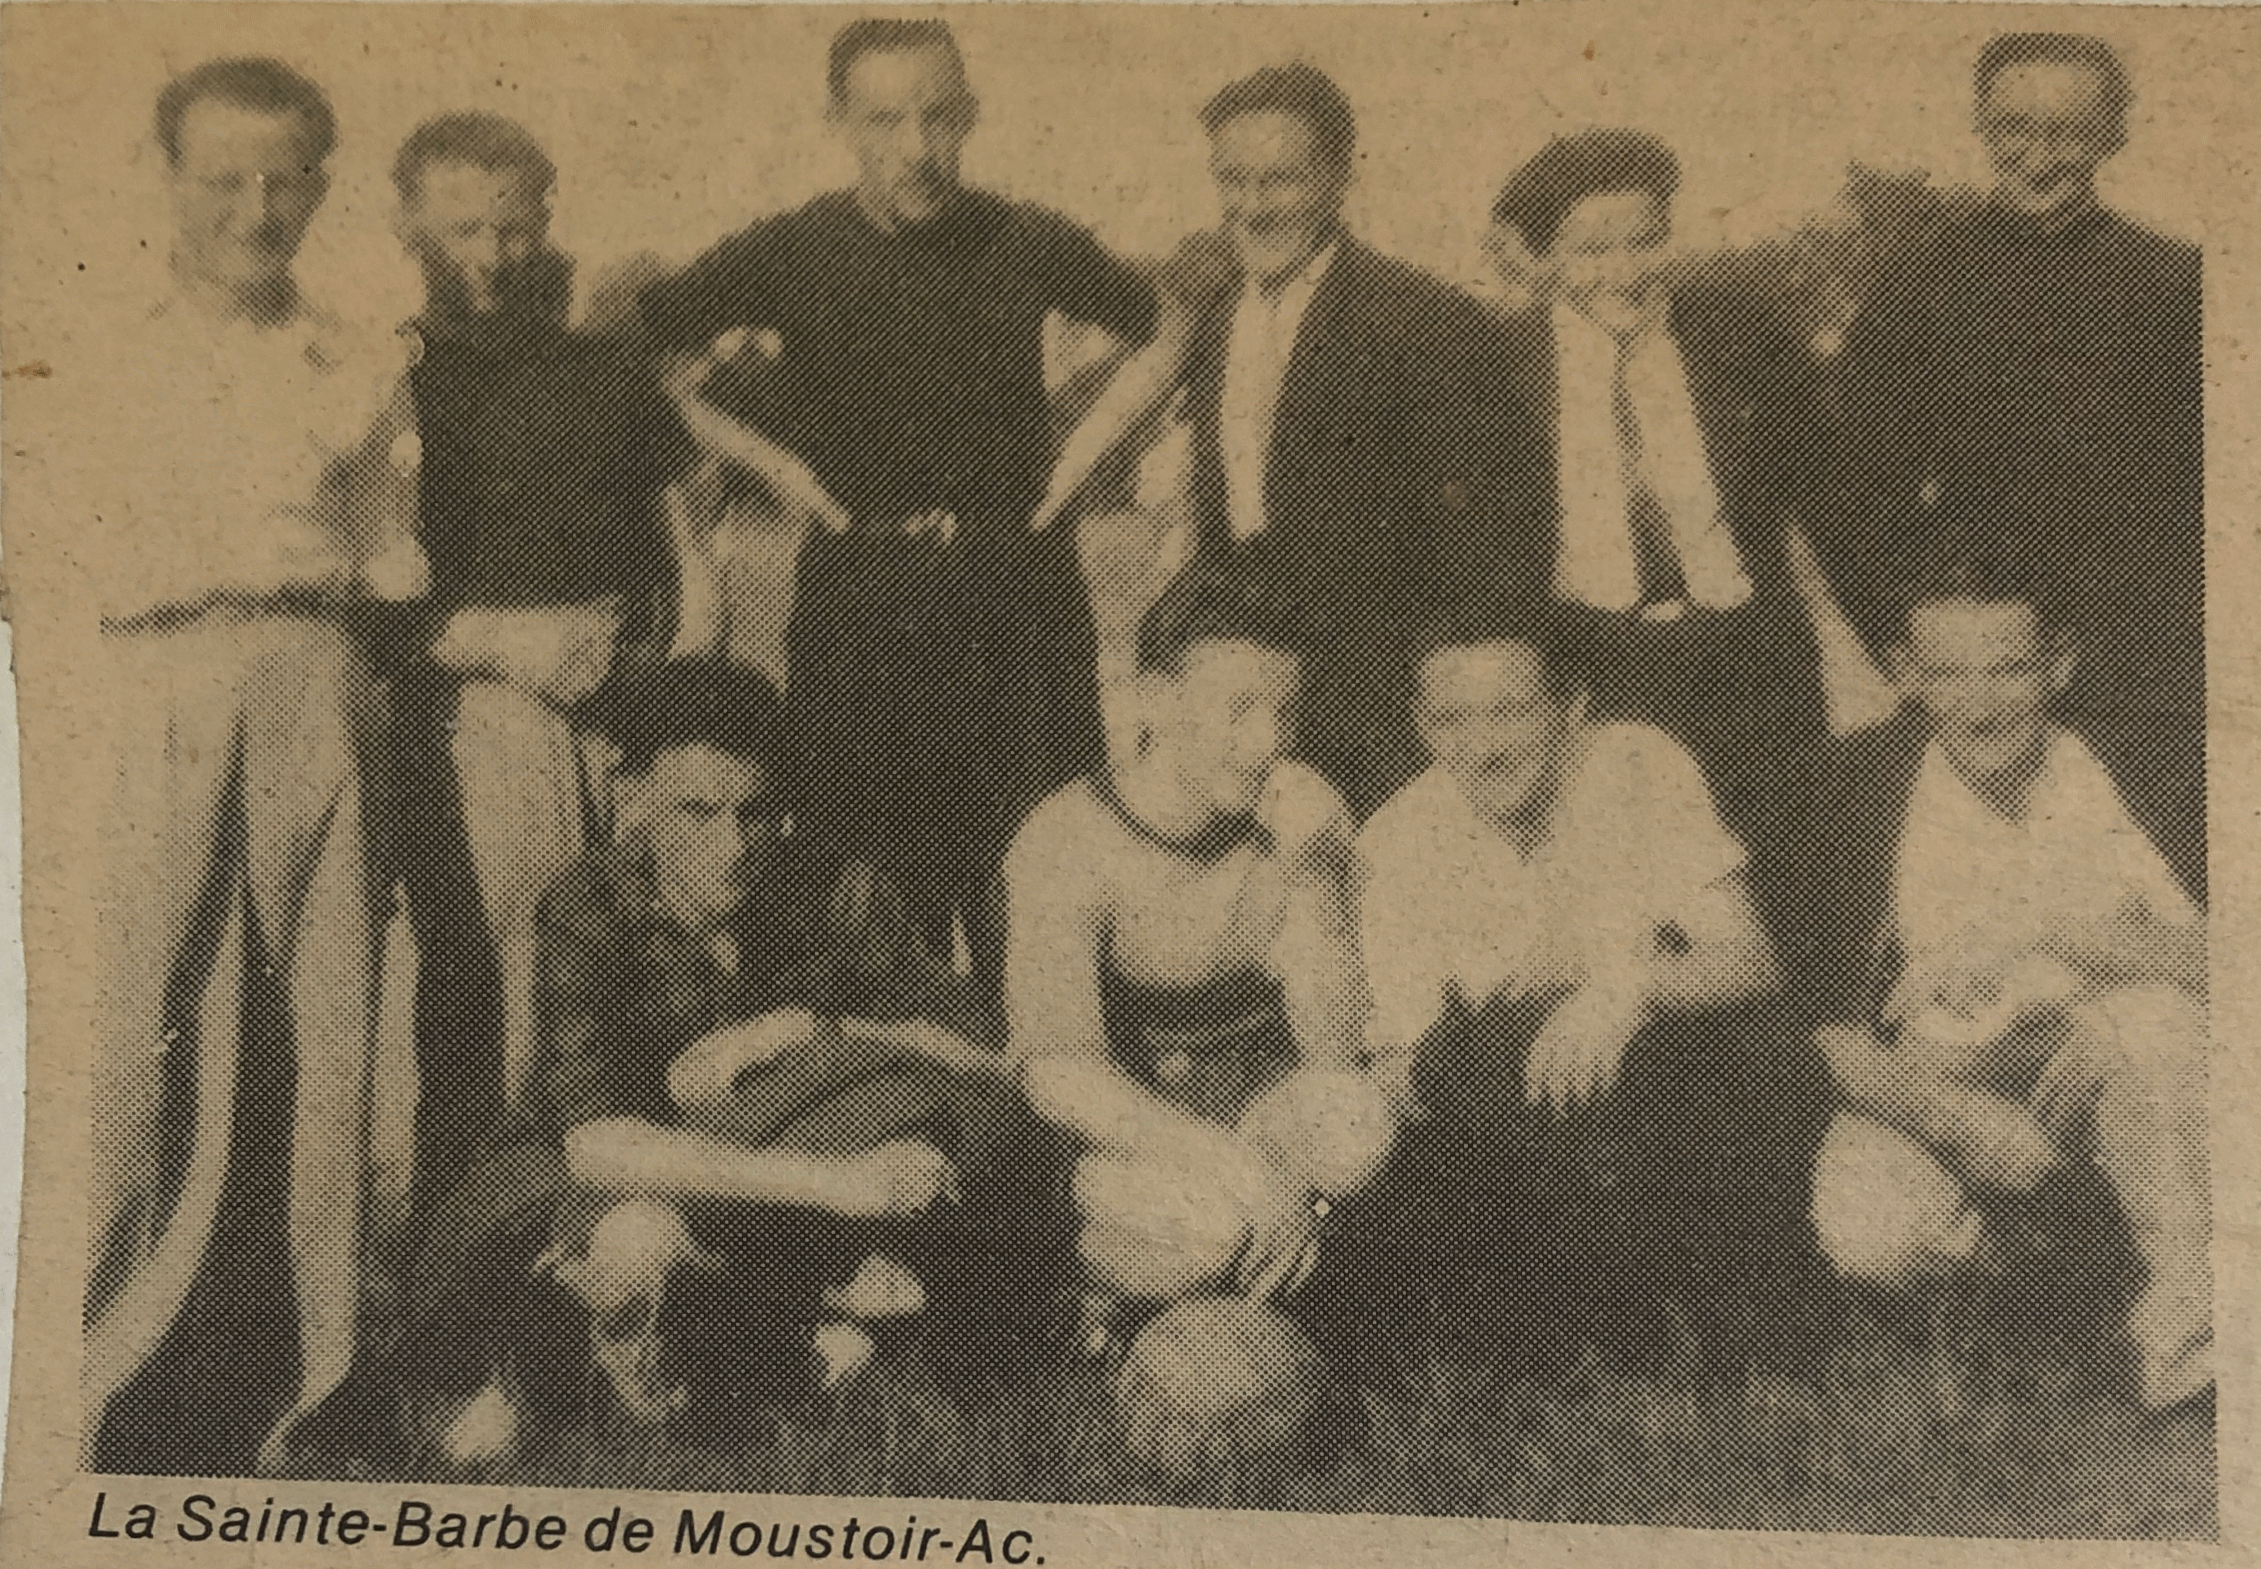 La Sainte Barbe de Moustoir-Ac, club d'après guerre.